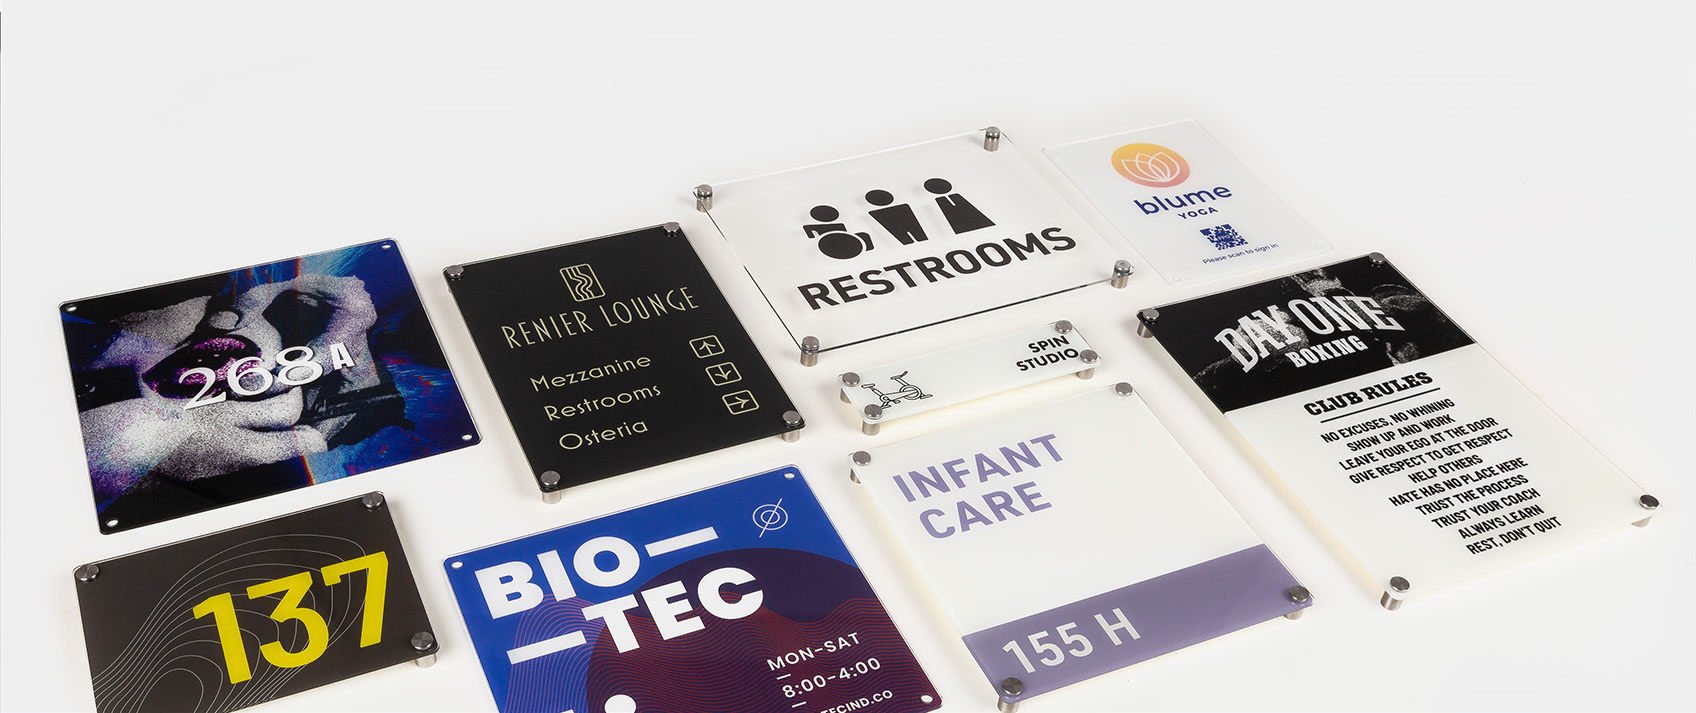 8 placas em acrílico personalizadas para diferentes usos em empresas e organizações, com fundo branco